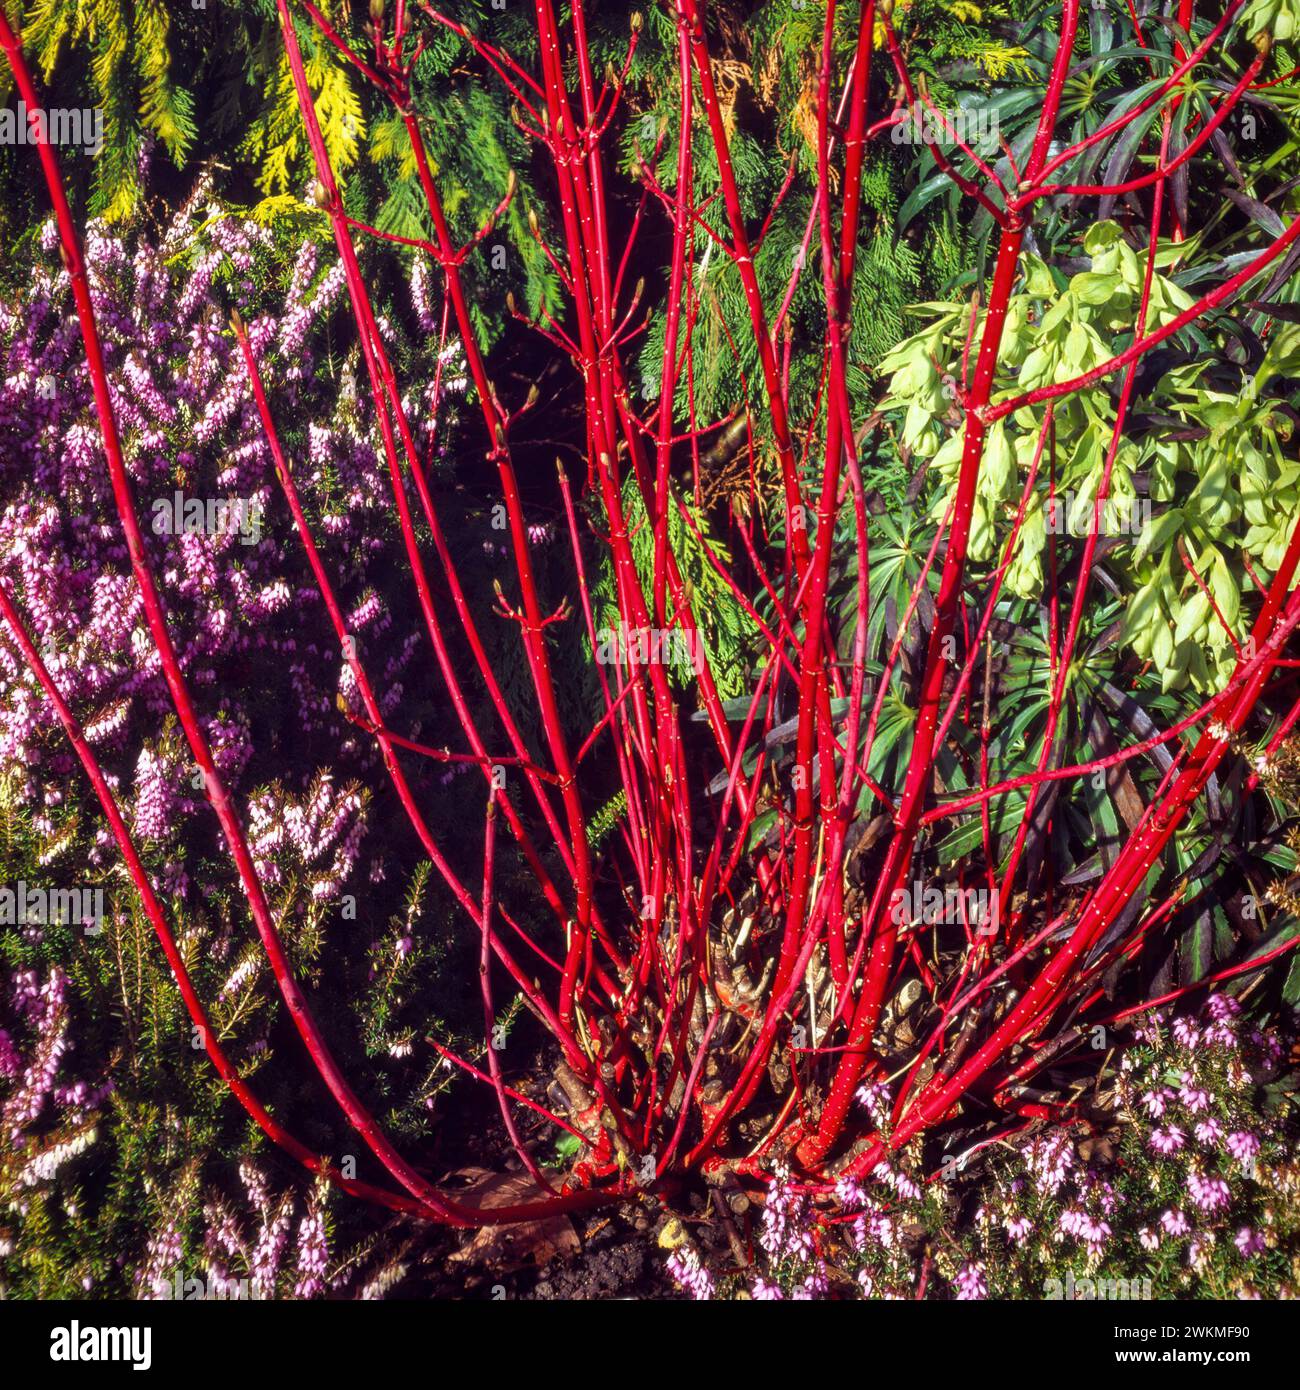 Steli rossi brillanti di Dogwood Cornus alba «Siberica» con Erica x darleyensis «Furzey» fiori di erica che crescono al confine con il giardino inglese, Inghilterra, Regno Unito Foto Stock